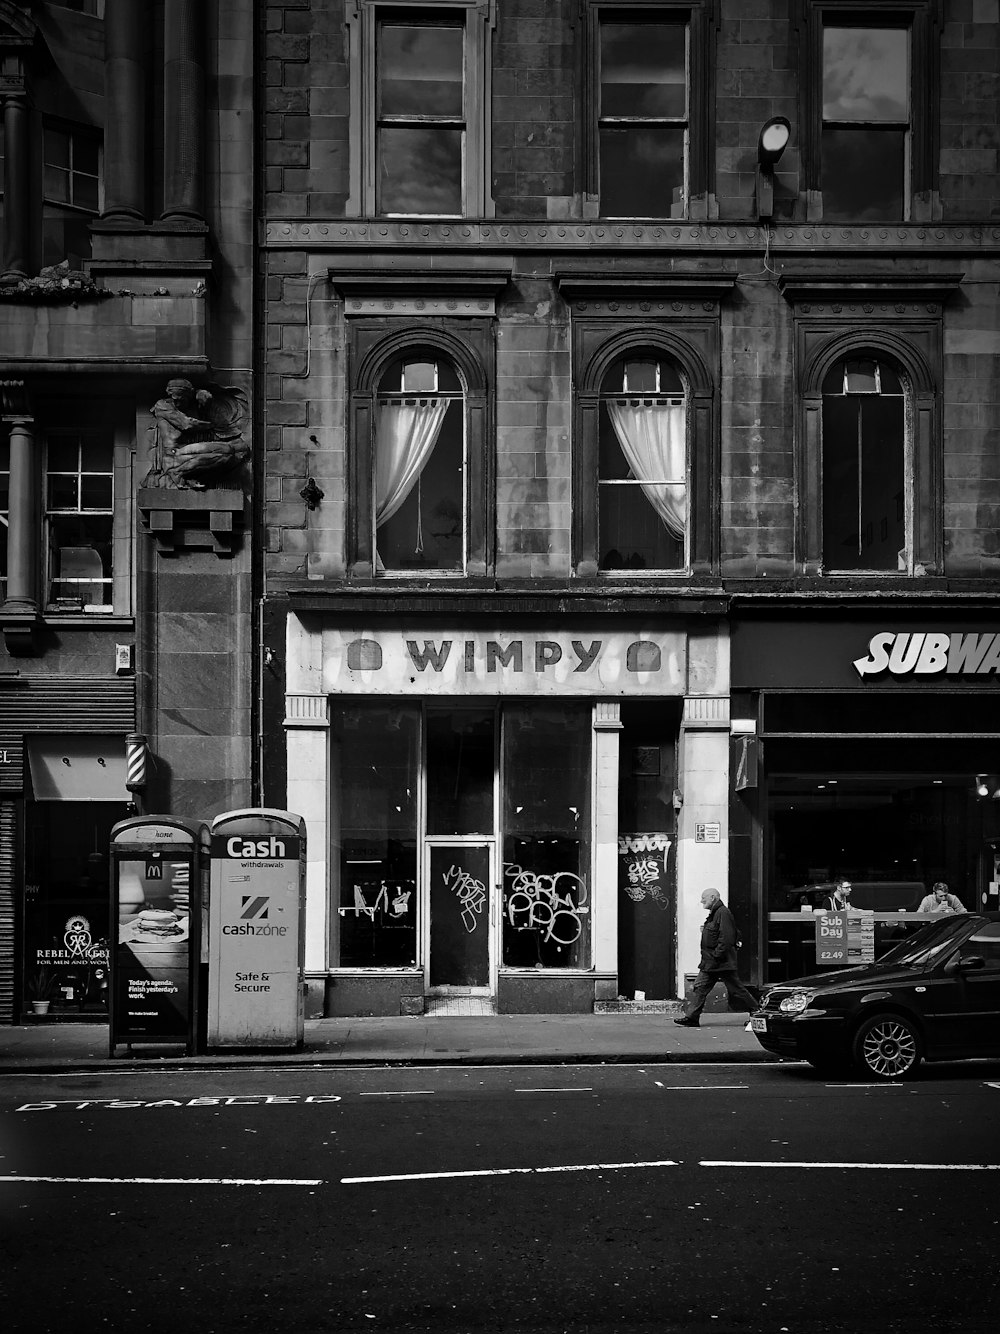 foto in scala di grigi di una persona che si sveglia sulla strada accanto alla boutique Wimpy